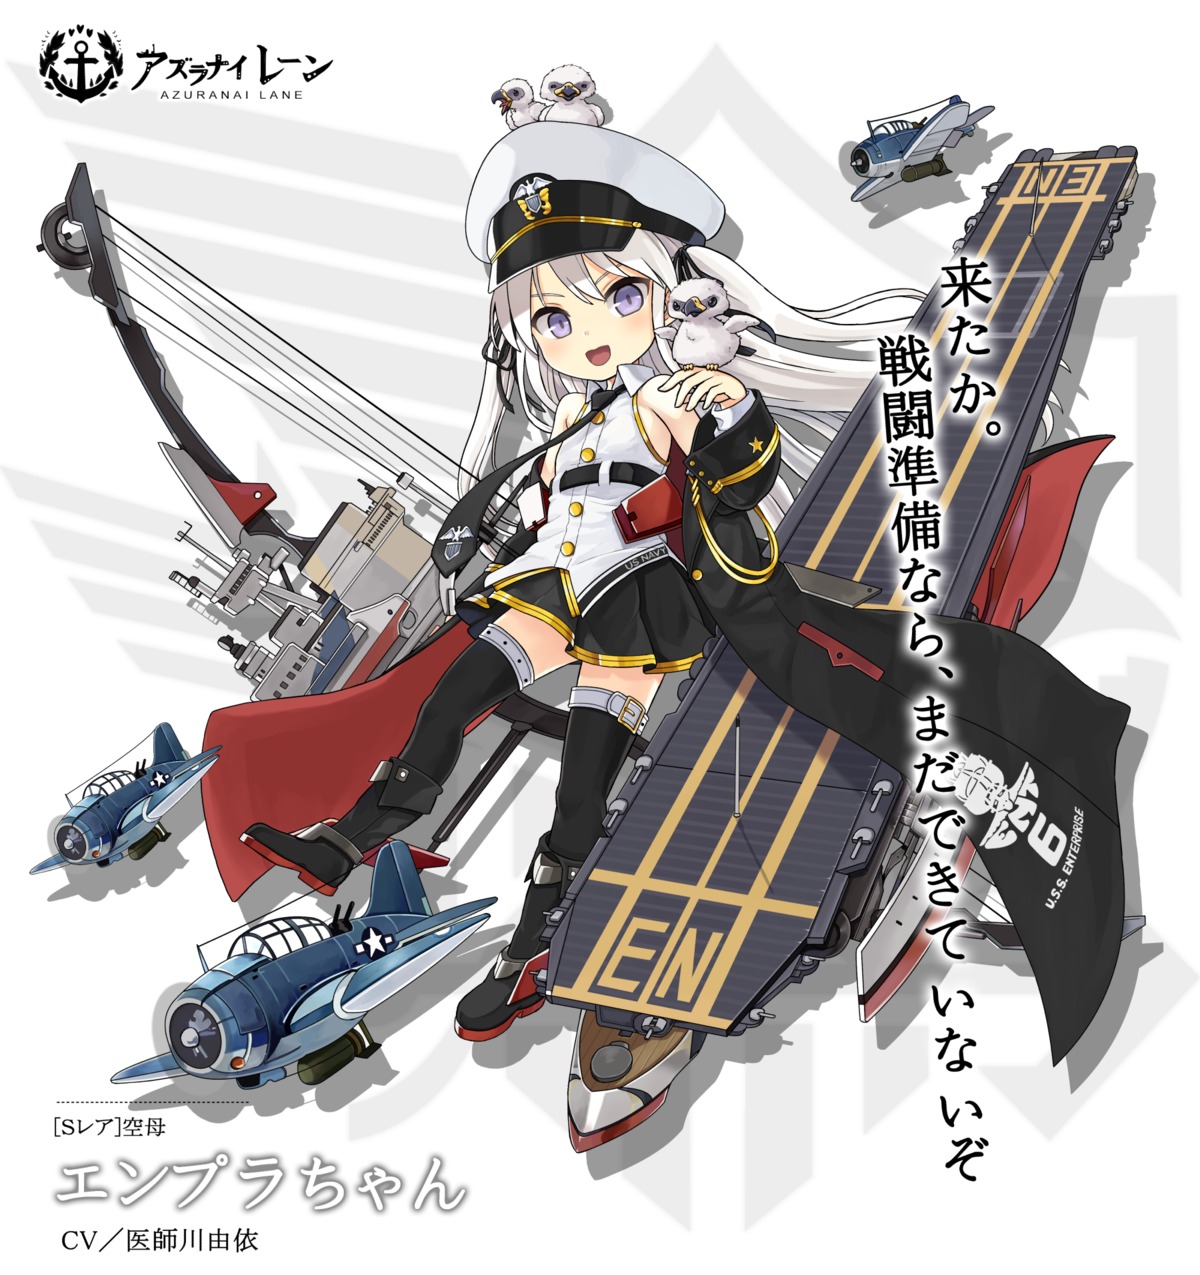 azur_lane enterprise_(azur_lane) kabutoyama thighhighs uniform weapon